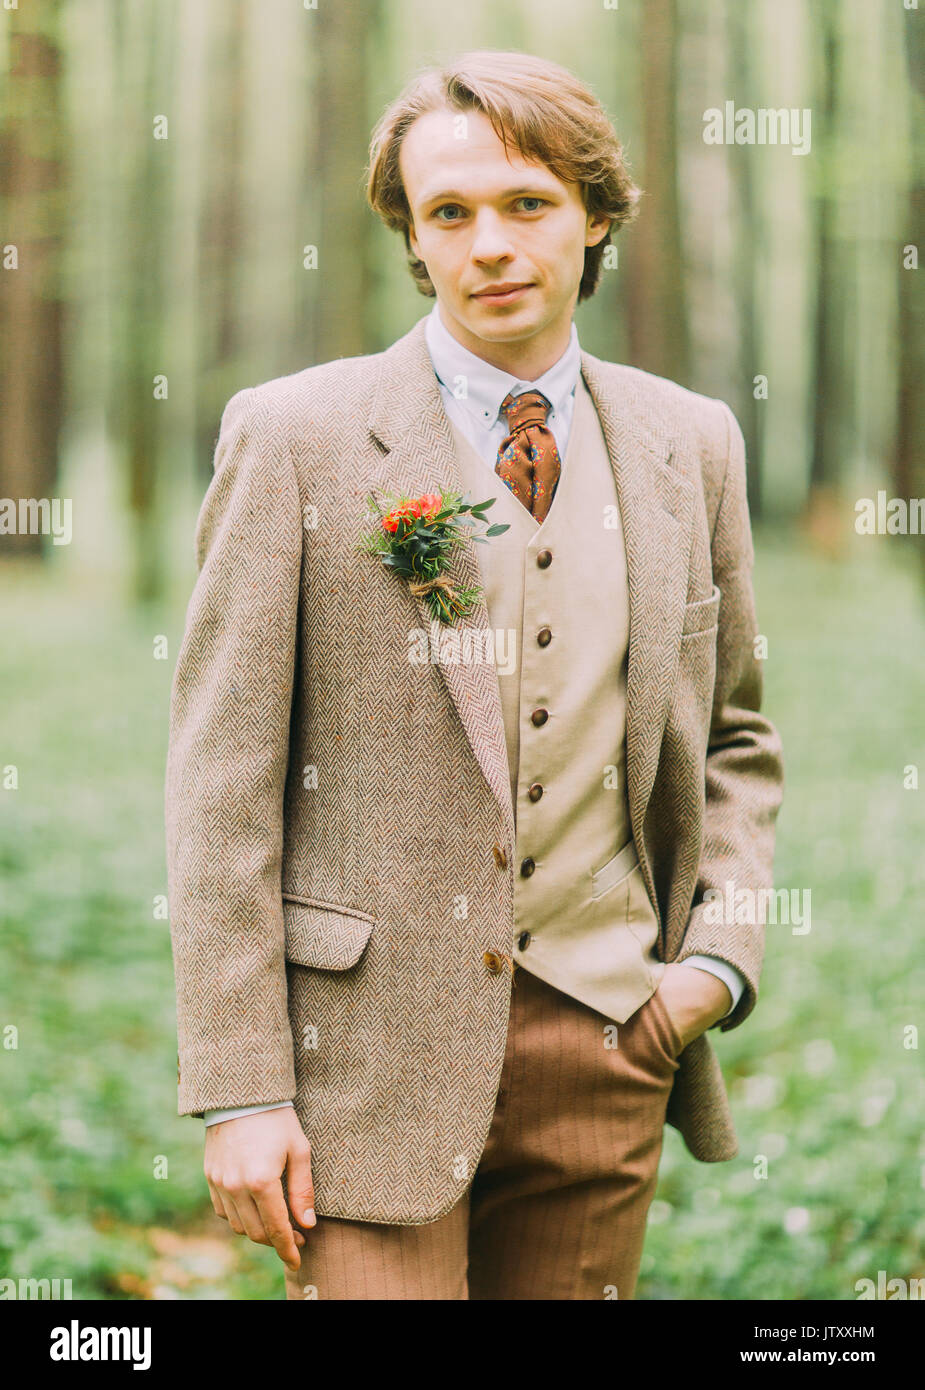 El hombre en el traje vintage, con mini-ramo de flores está anclado en su chaqueta está la cámara y mantener la mano en su bolsillo. Close-up retrato frontal en la madera